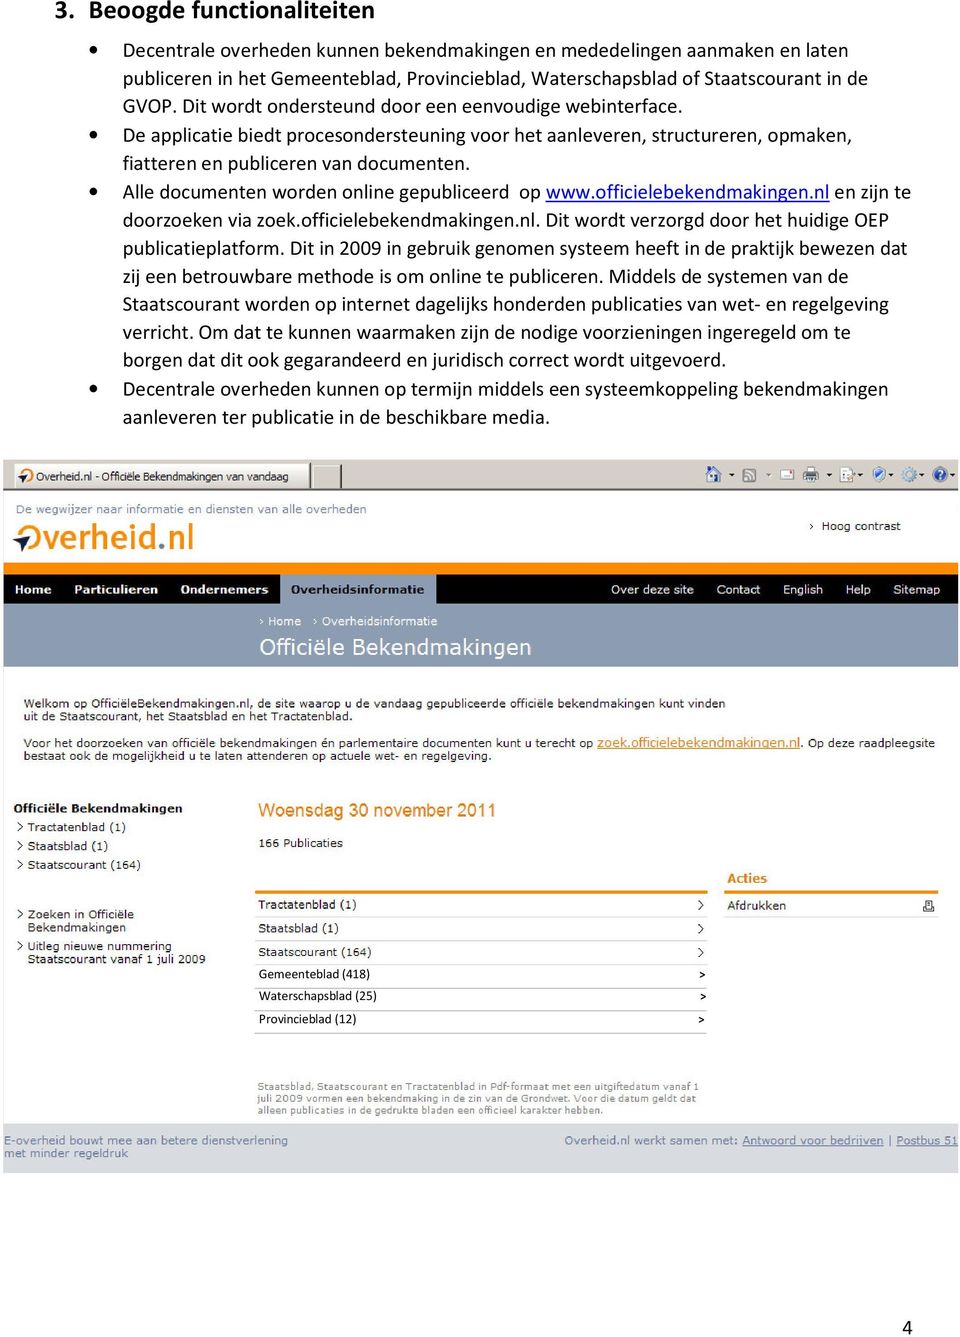 Alle documenten worden online gepubliceerd op www.officielebekendmakingen.nl en zijn te doorzoeken via zoek.officielebekendmakingen.nl. Dit wordt verzorgd door het huidige OEP publicatieplatform.